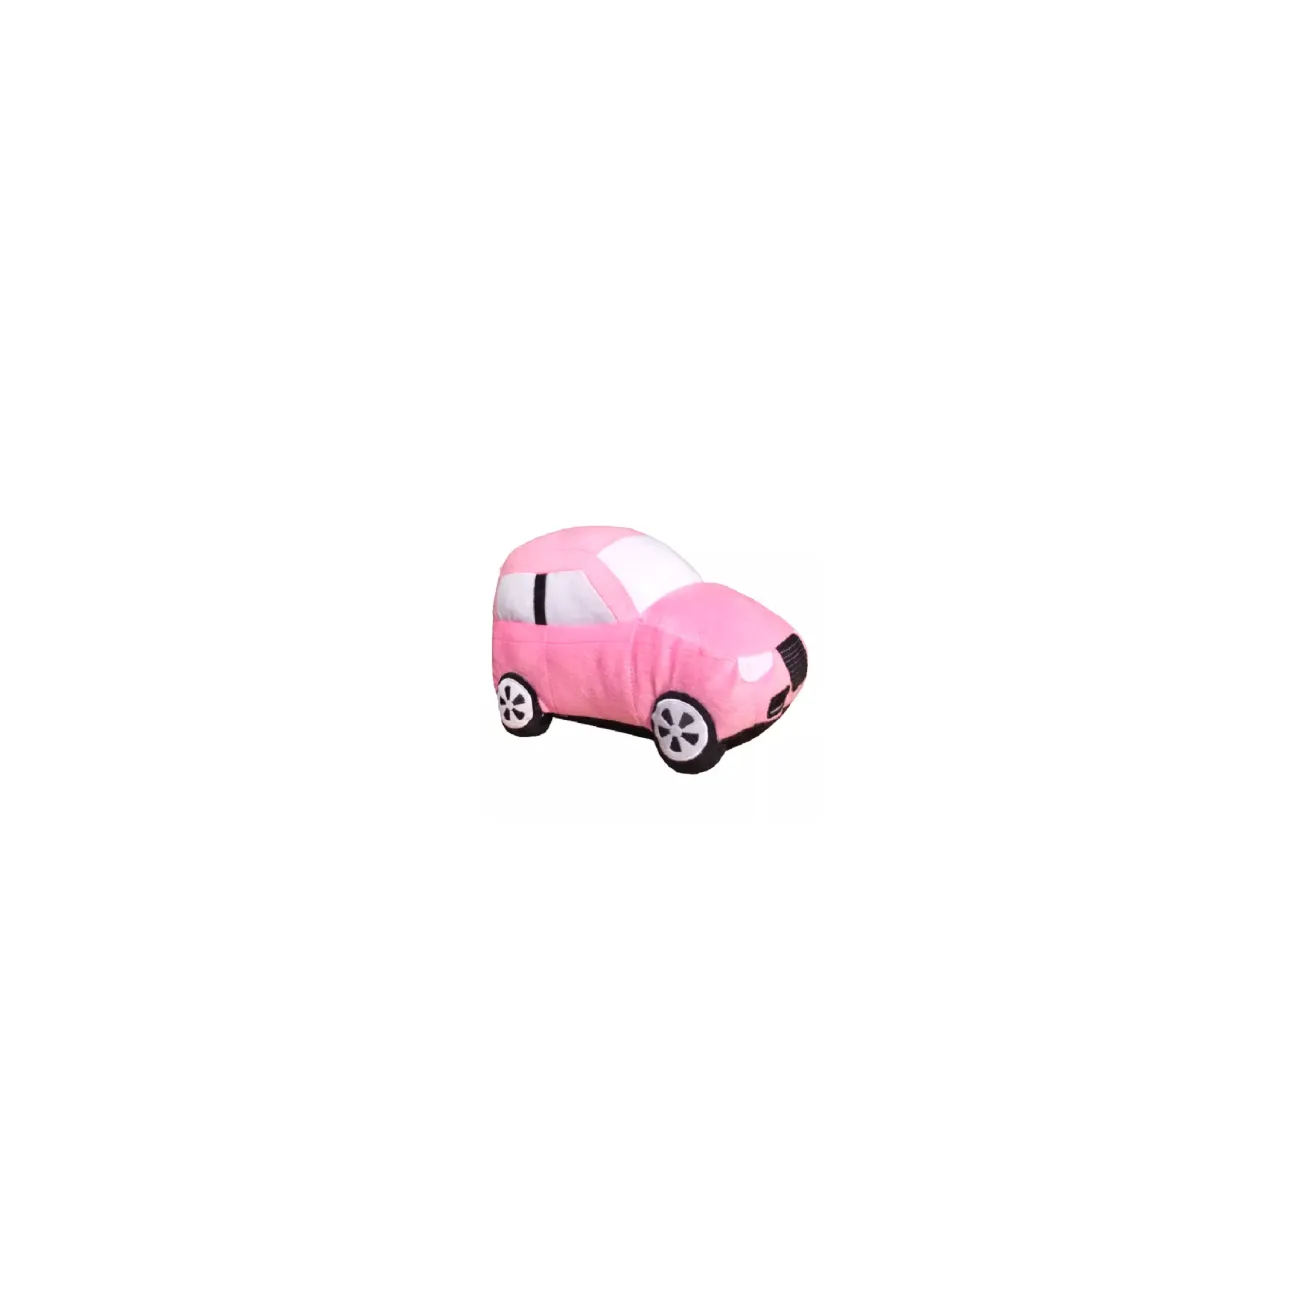 Juguete de peluche de coche rosa para bebé, suave, no tóxico y antialérgico, tela de poliéster